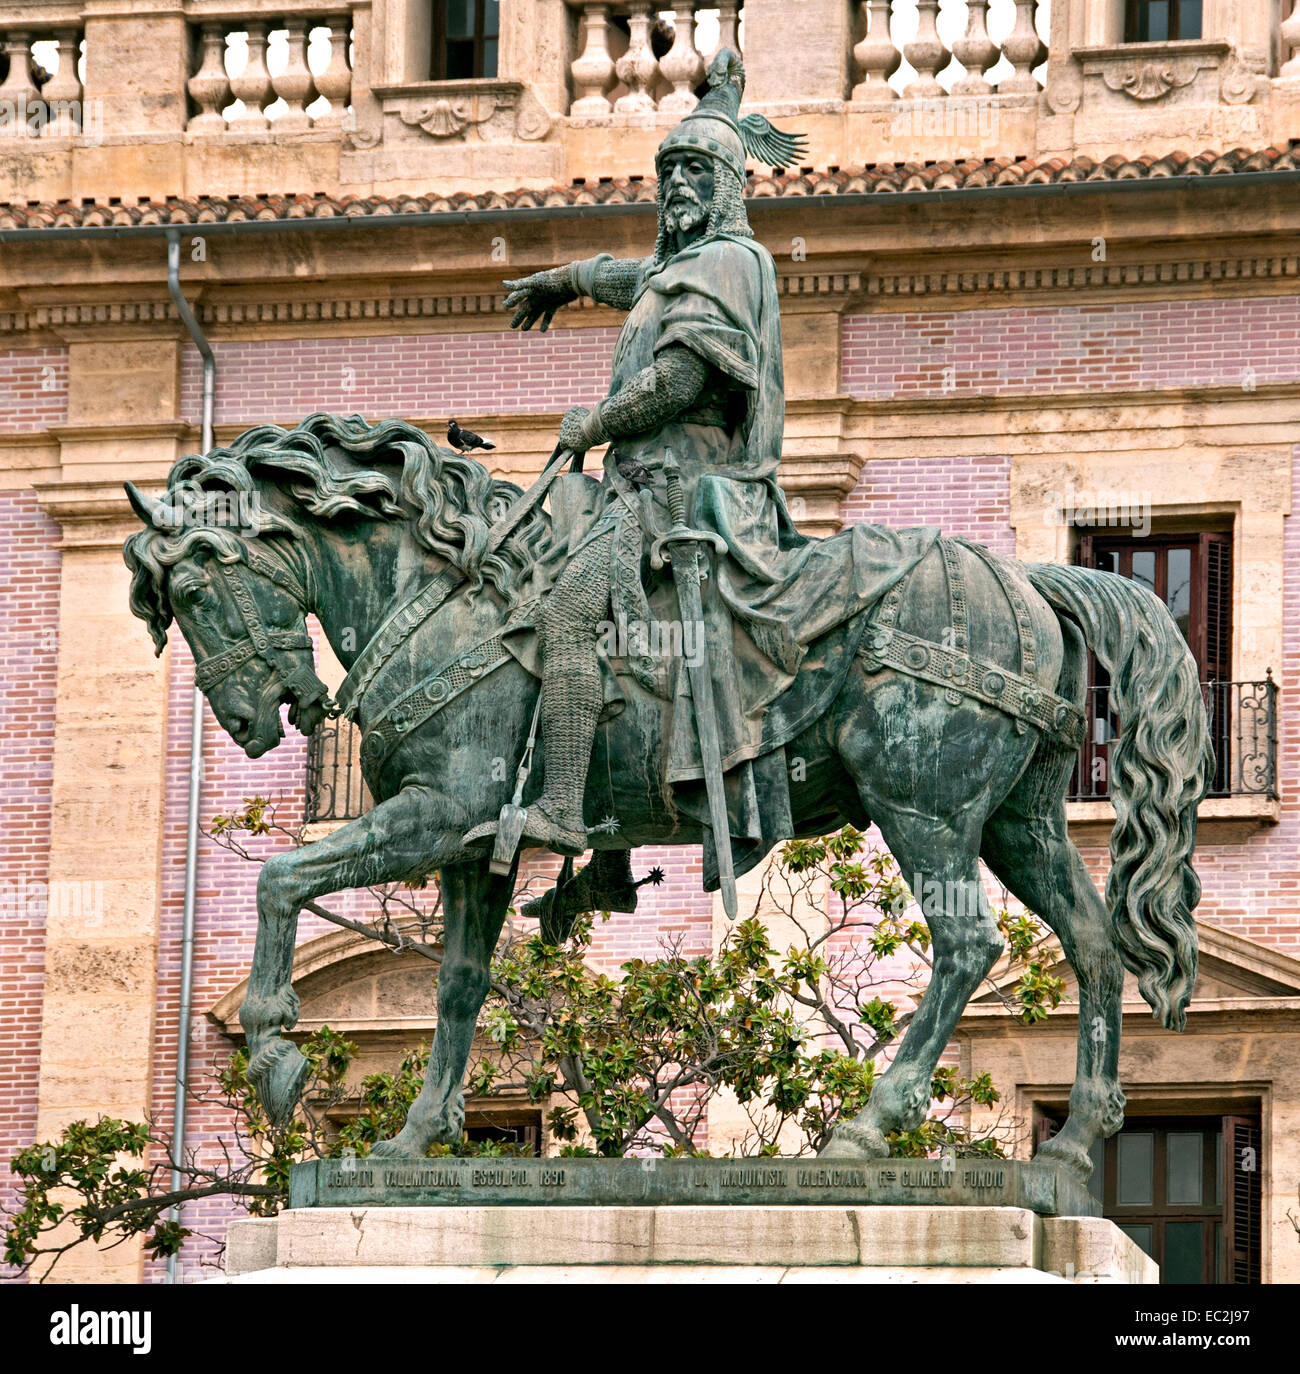 Statue von König Jaume ich (James ich dem Eroberer) Old Town City Center Valencia Spanien Spanisch (König von Aragon, Valencia und Mallorca) Stockfoto